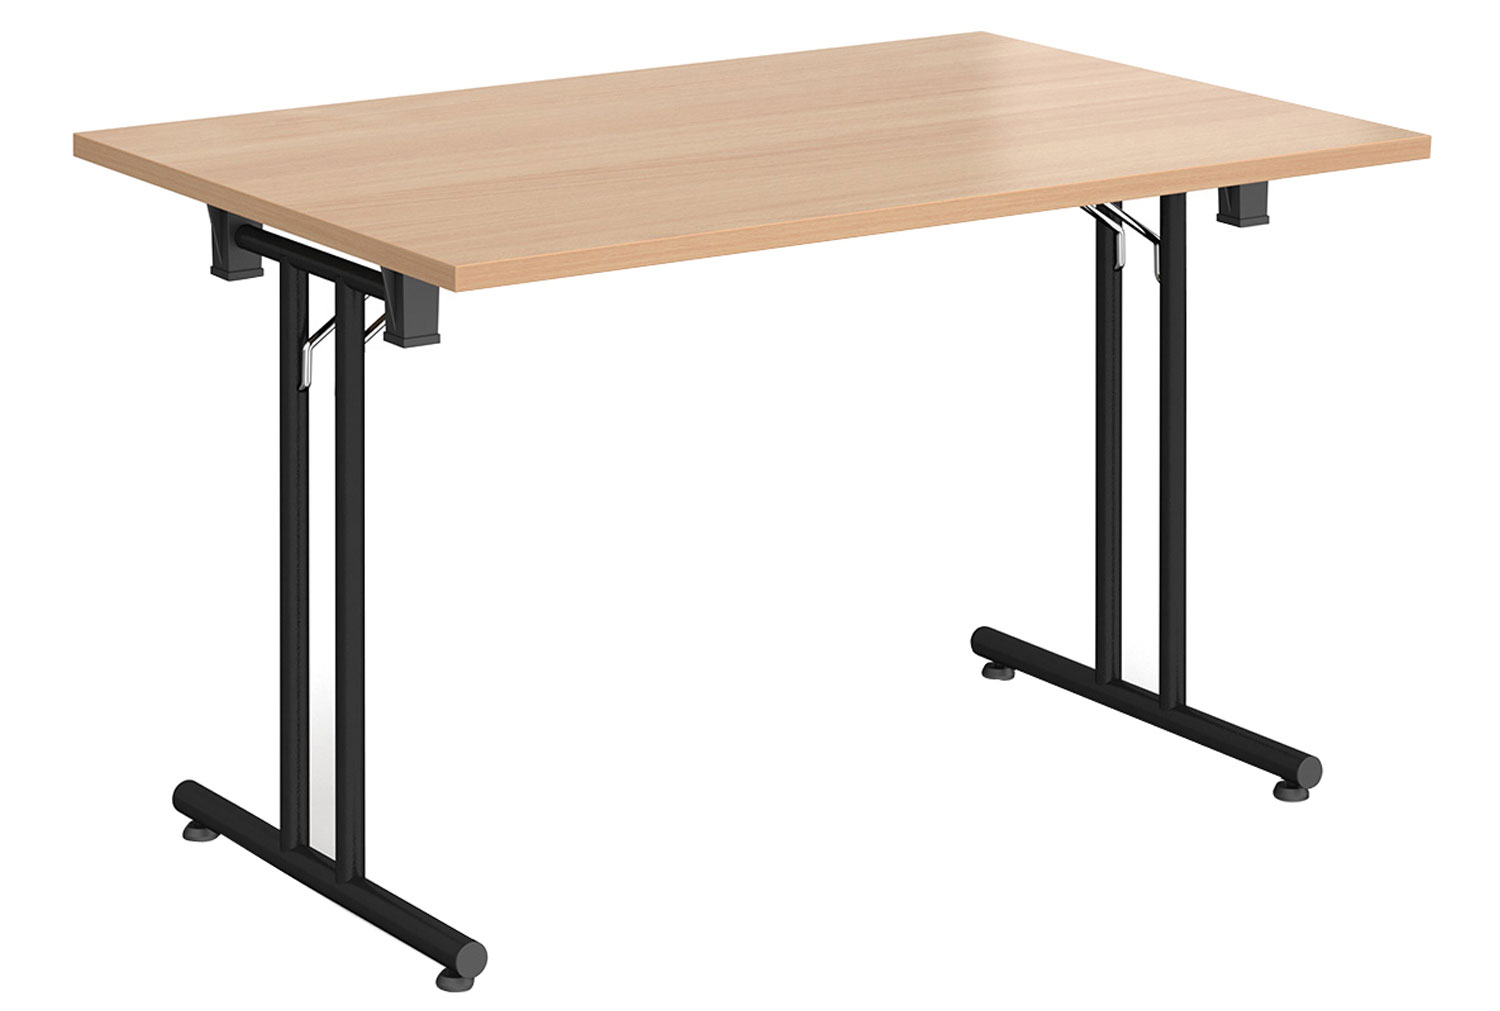 Ziegler Rectangular Folding Table, 120wx80dx73h (cm), Beech